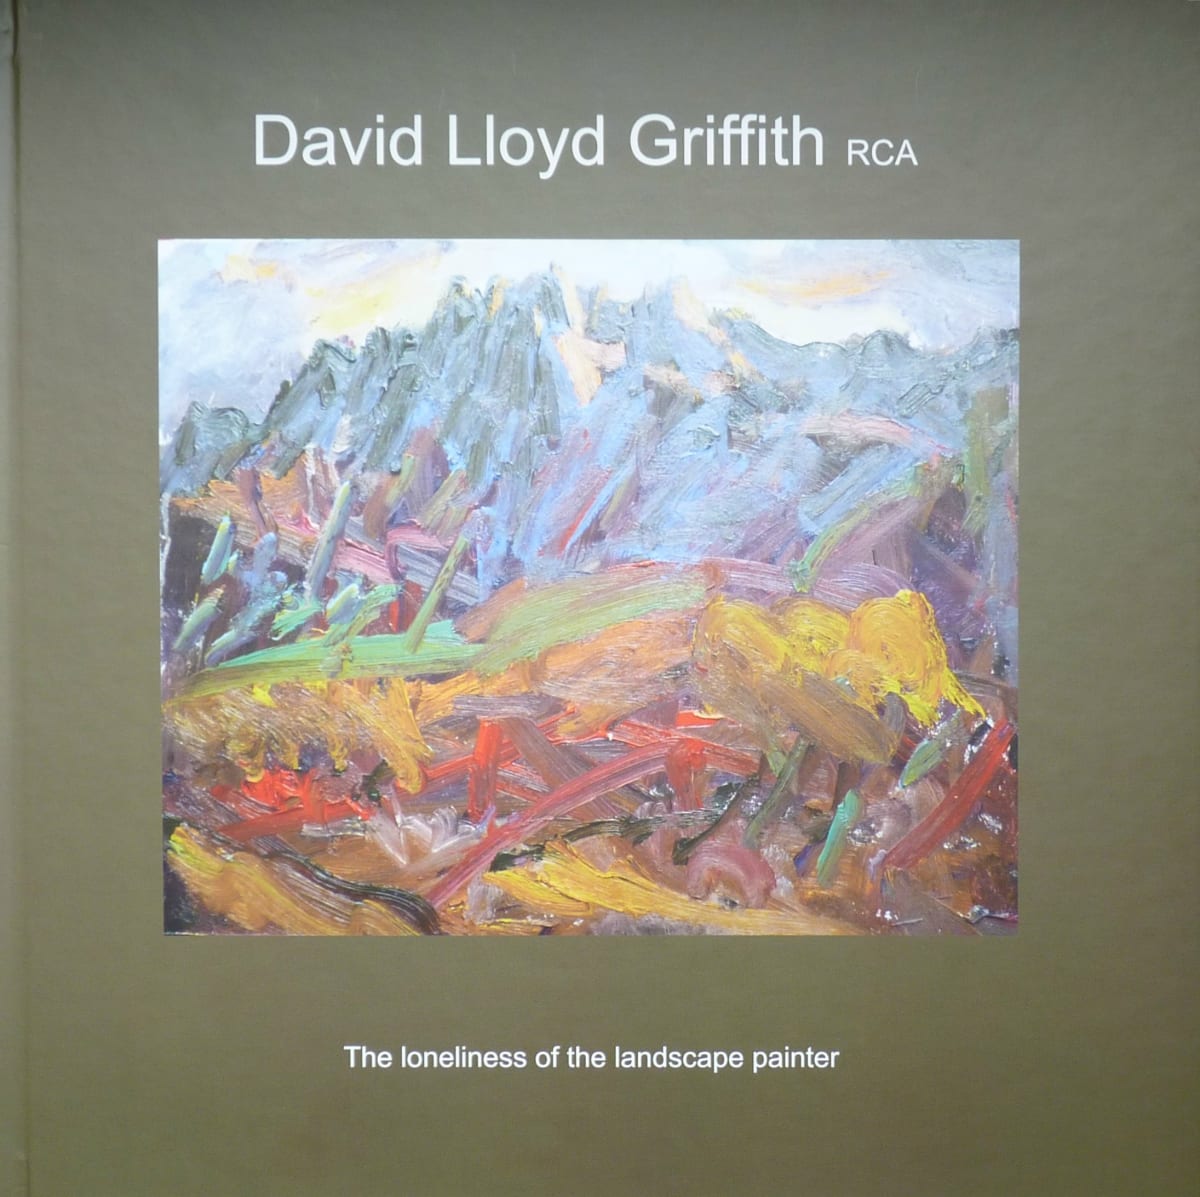 David Lloyd Griffith RCA